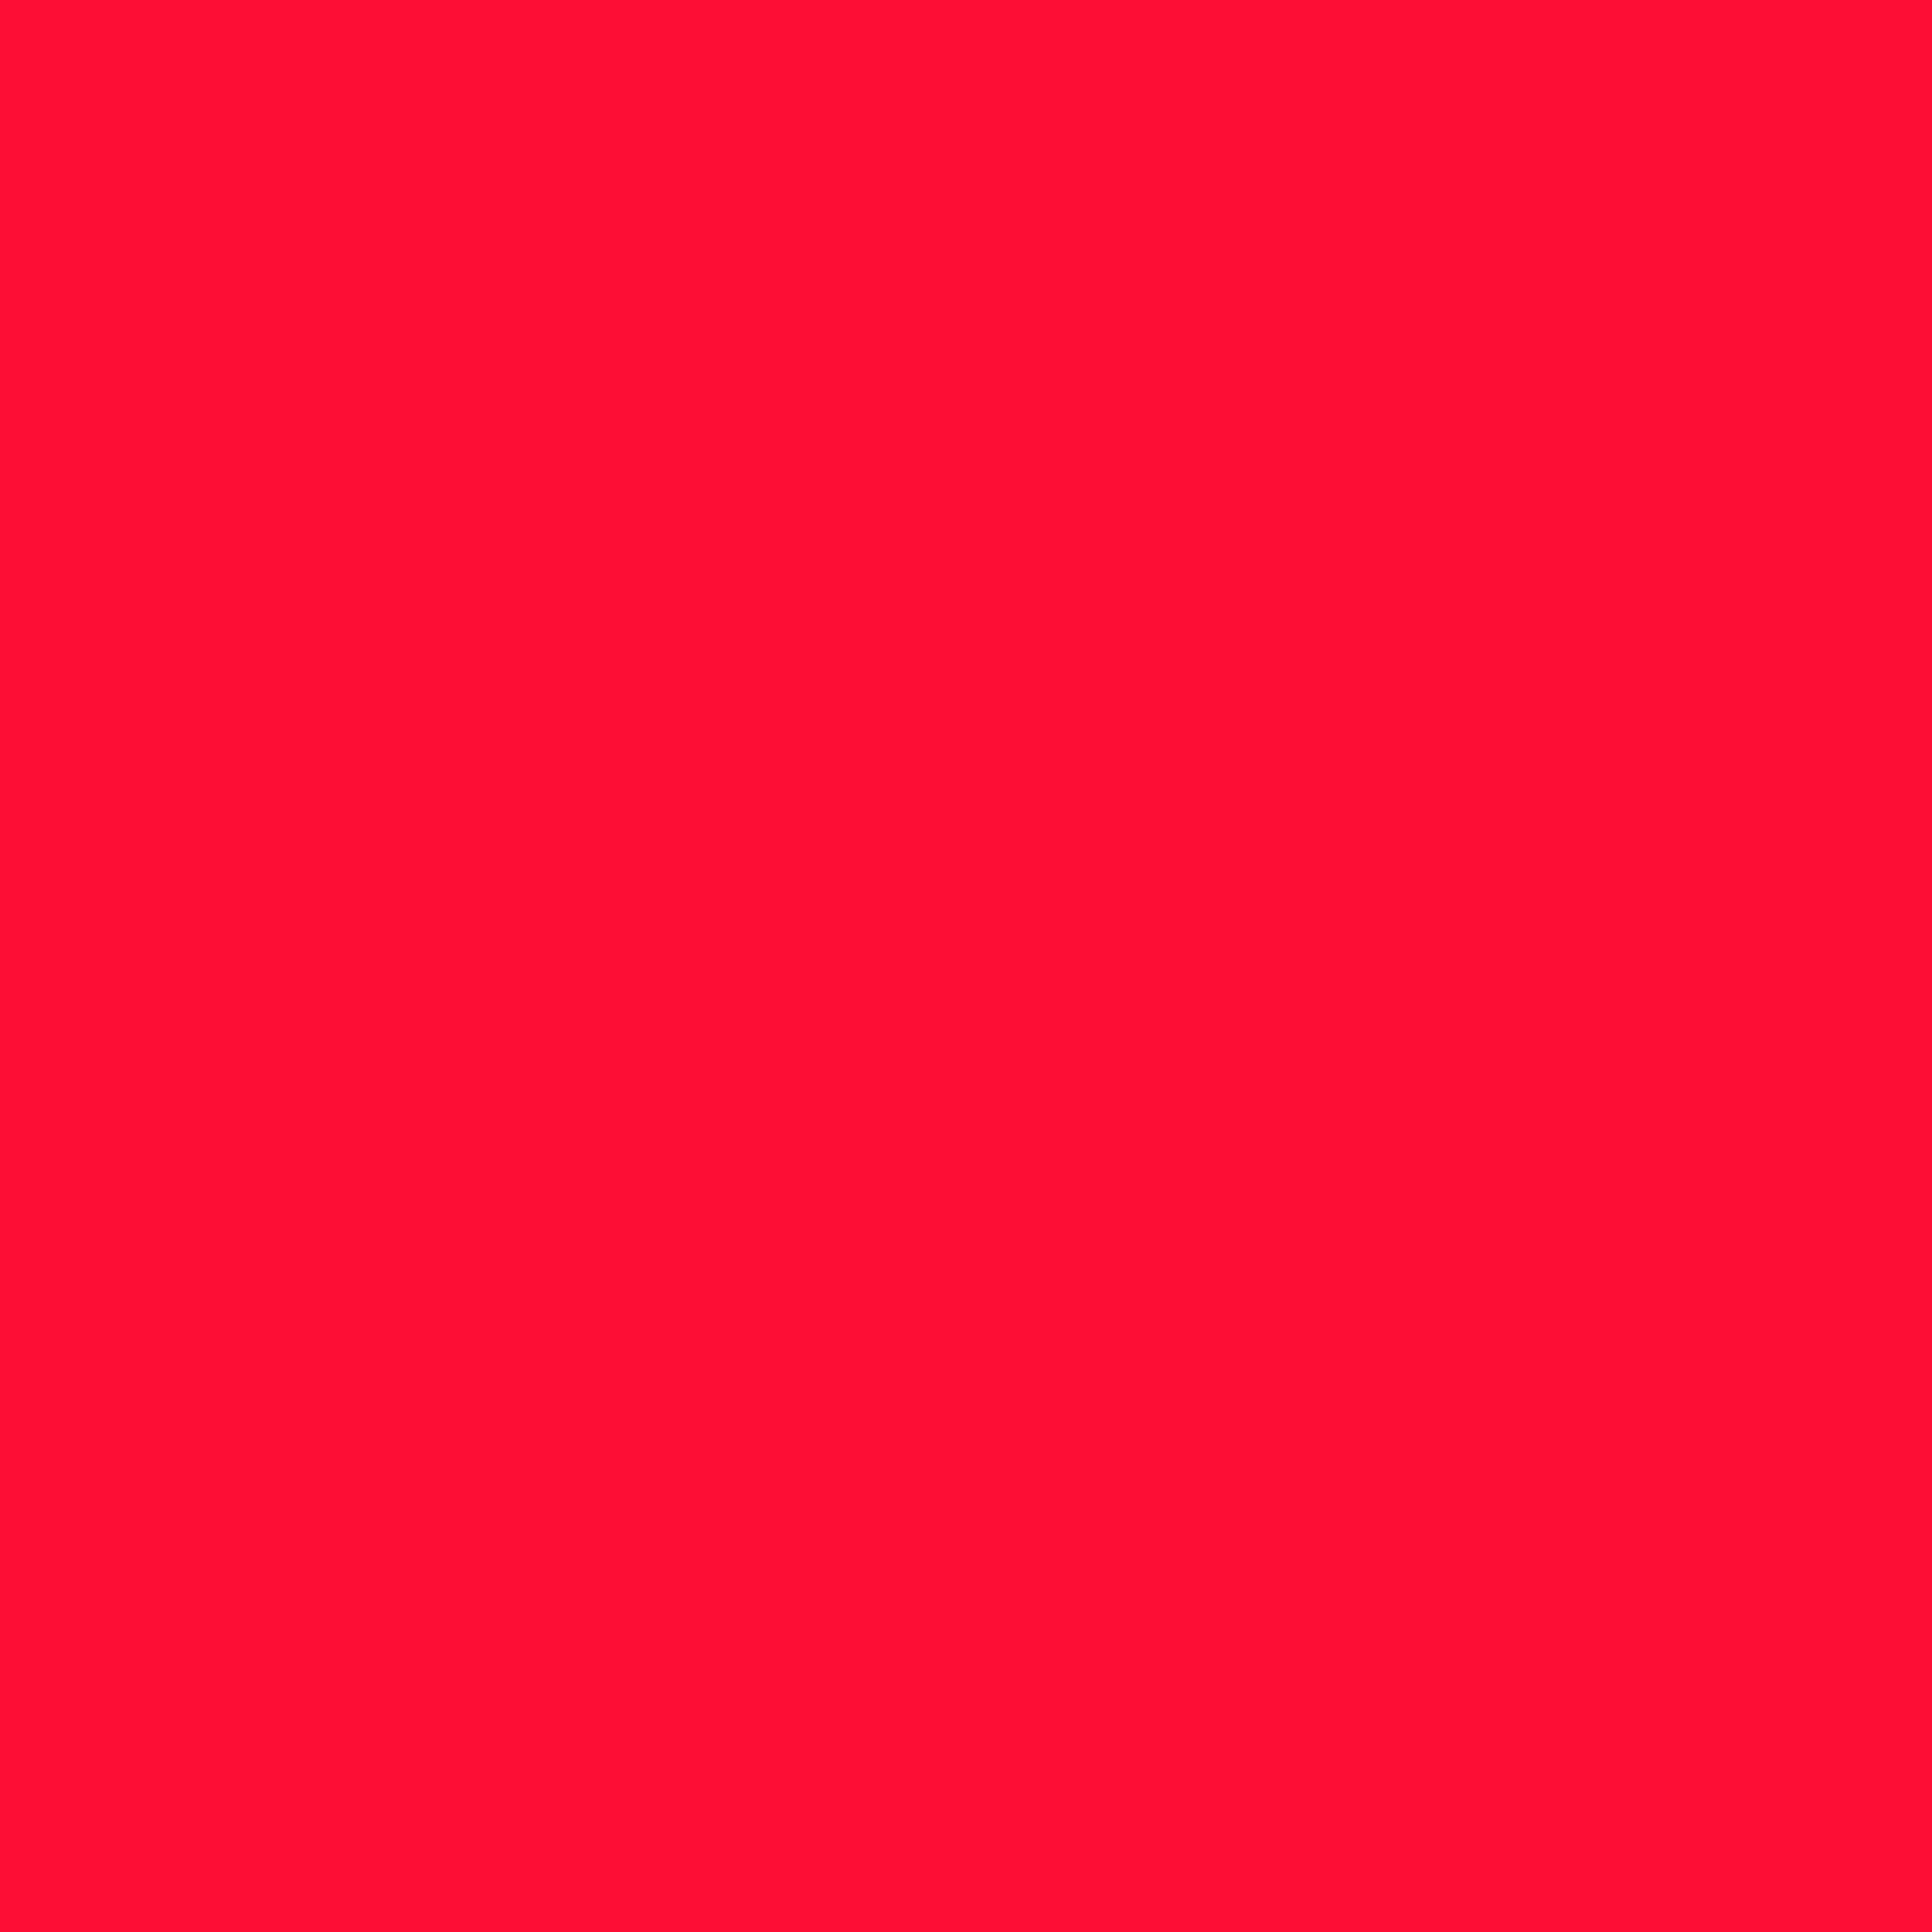 2048x2048 Scarlet Crayola Solid Color Background